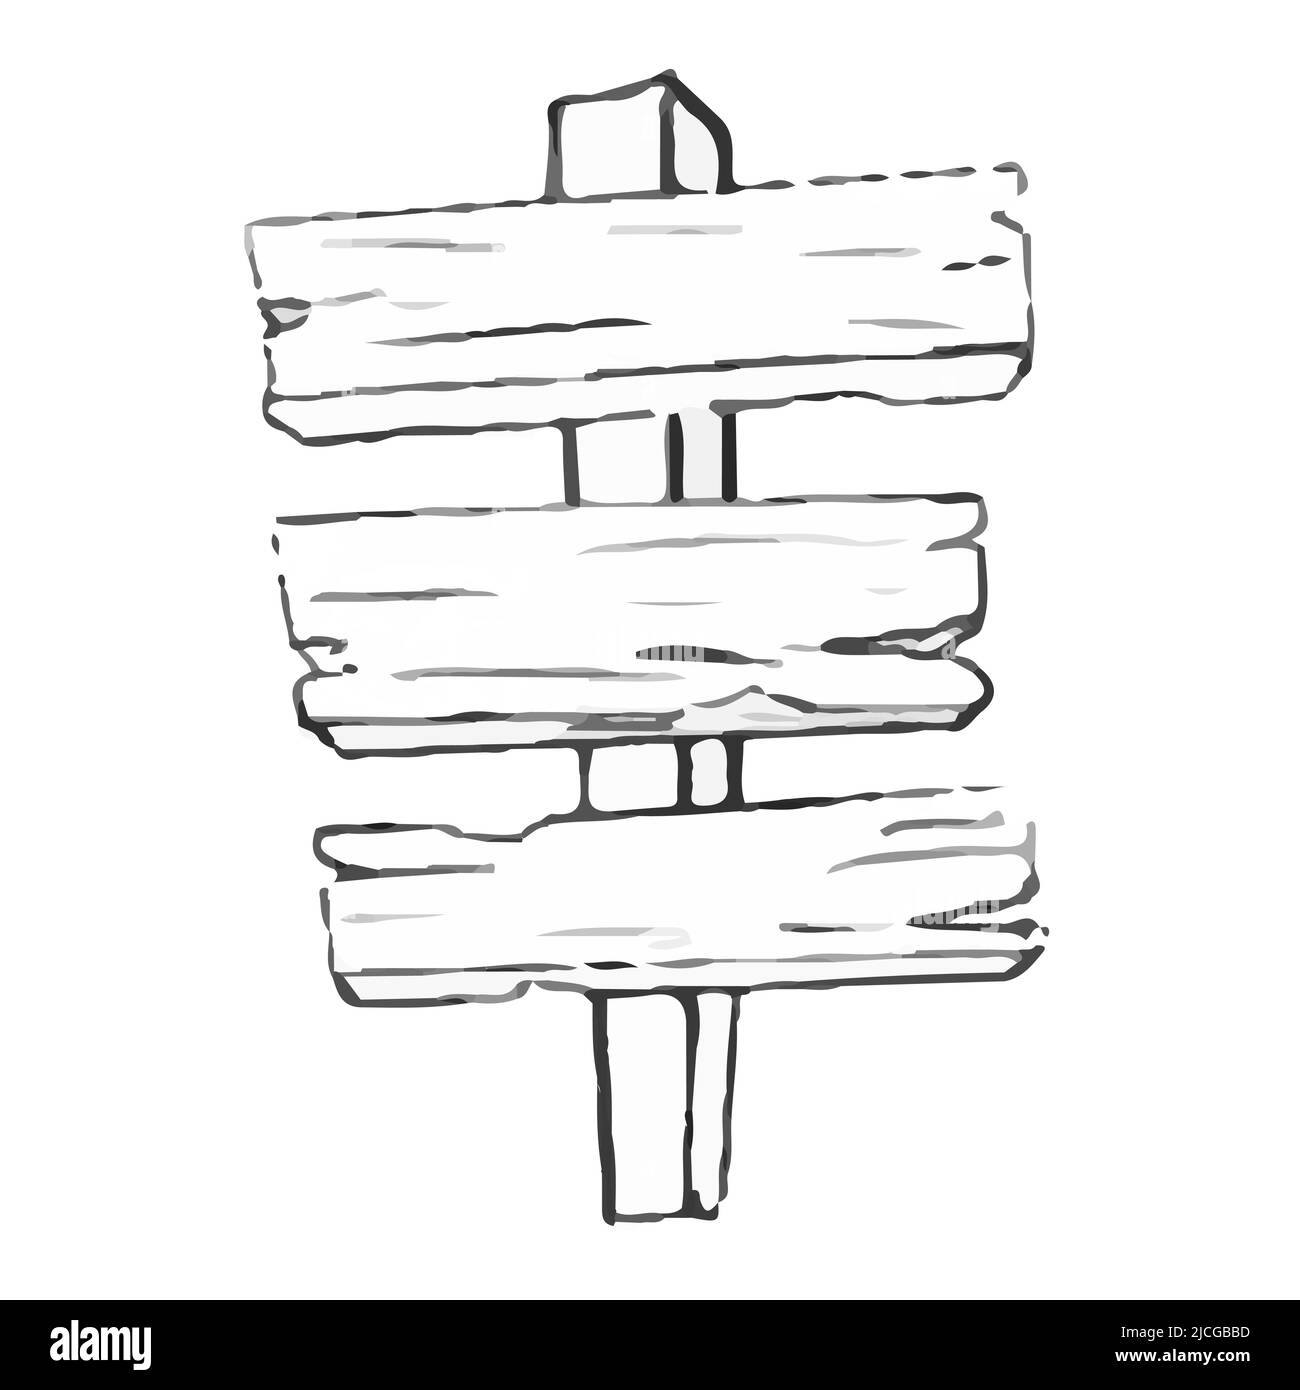 Cartello stradale in legno in stile doodle isolato su sfondo bianco. Segnaletica stradale disegnata a mano. Illustrazione vettoriale Illustrazione Vettoriale